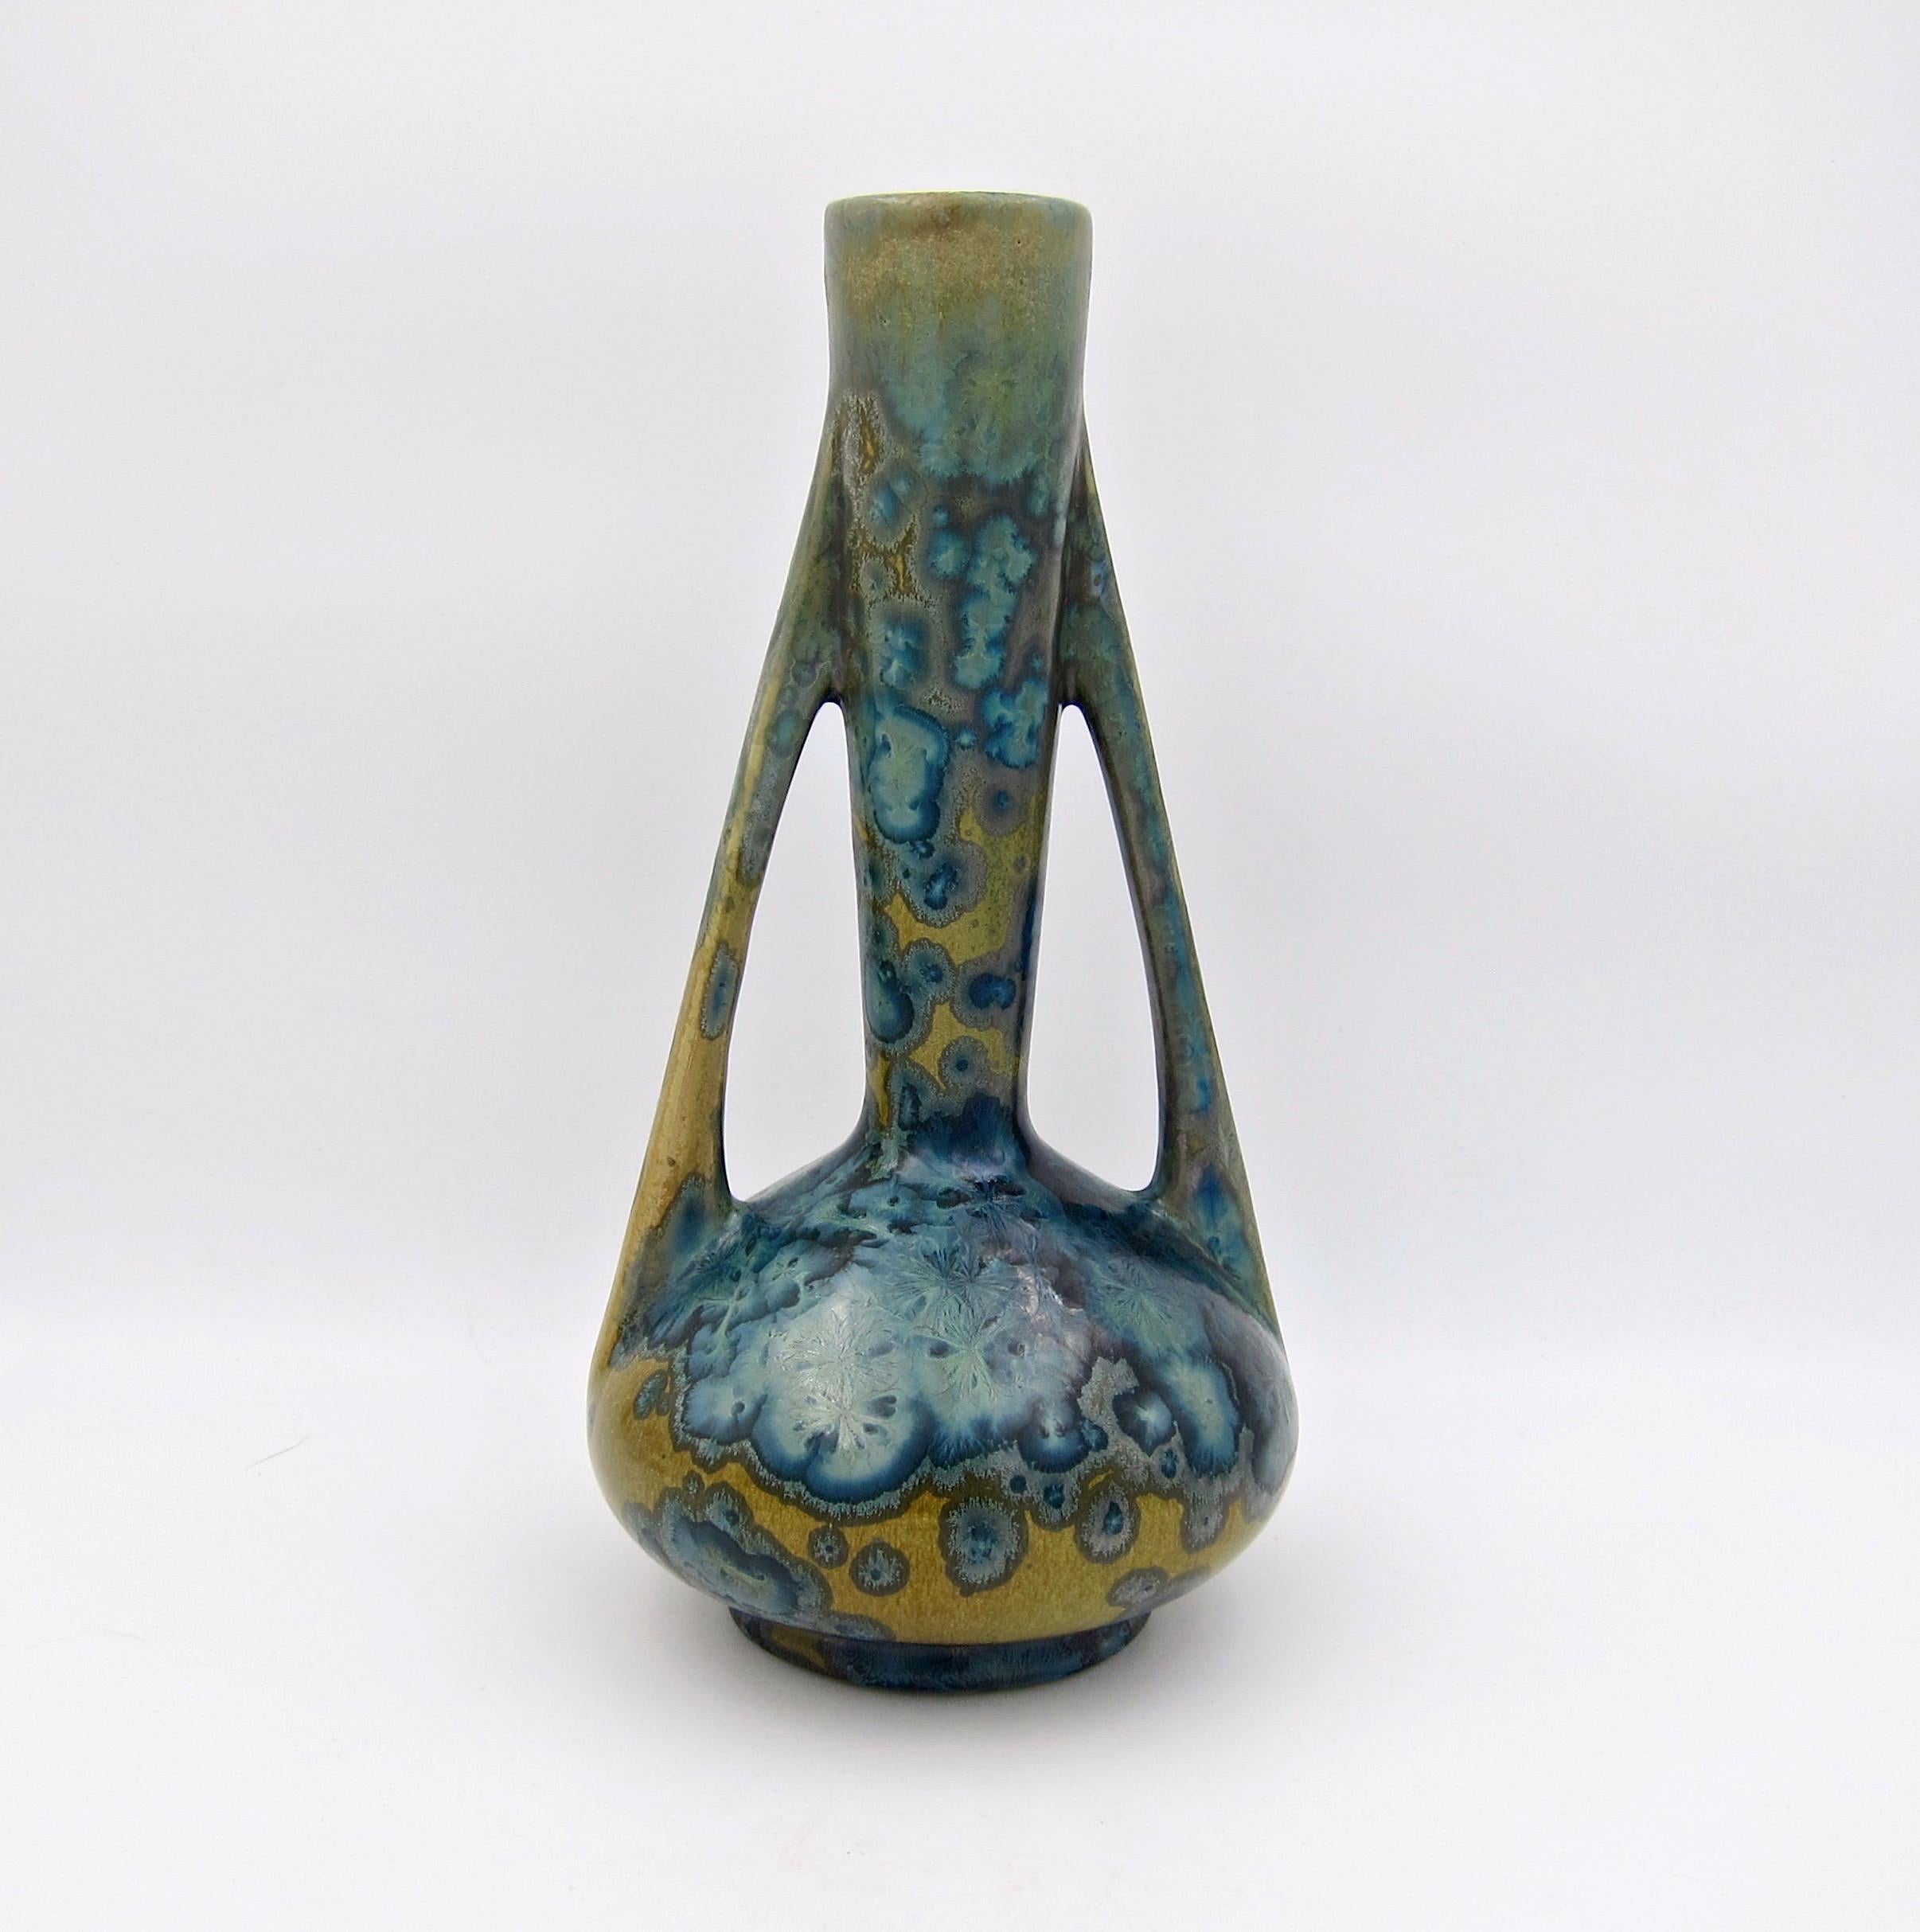 Un superbe vase en poterie d'art Art Nouveau du tournant du 20ème siècle de la poterie de Pierrefonds de France. Ce récipient antique à deux anses date d'environ 1905 et est décoré d'une glaçure aux nuances de bleu variées sur un fond beige/écossais